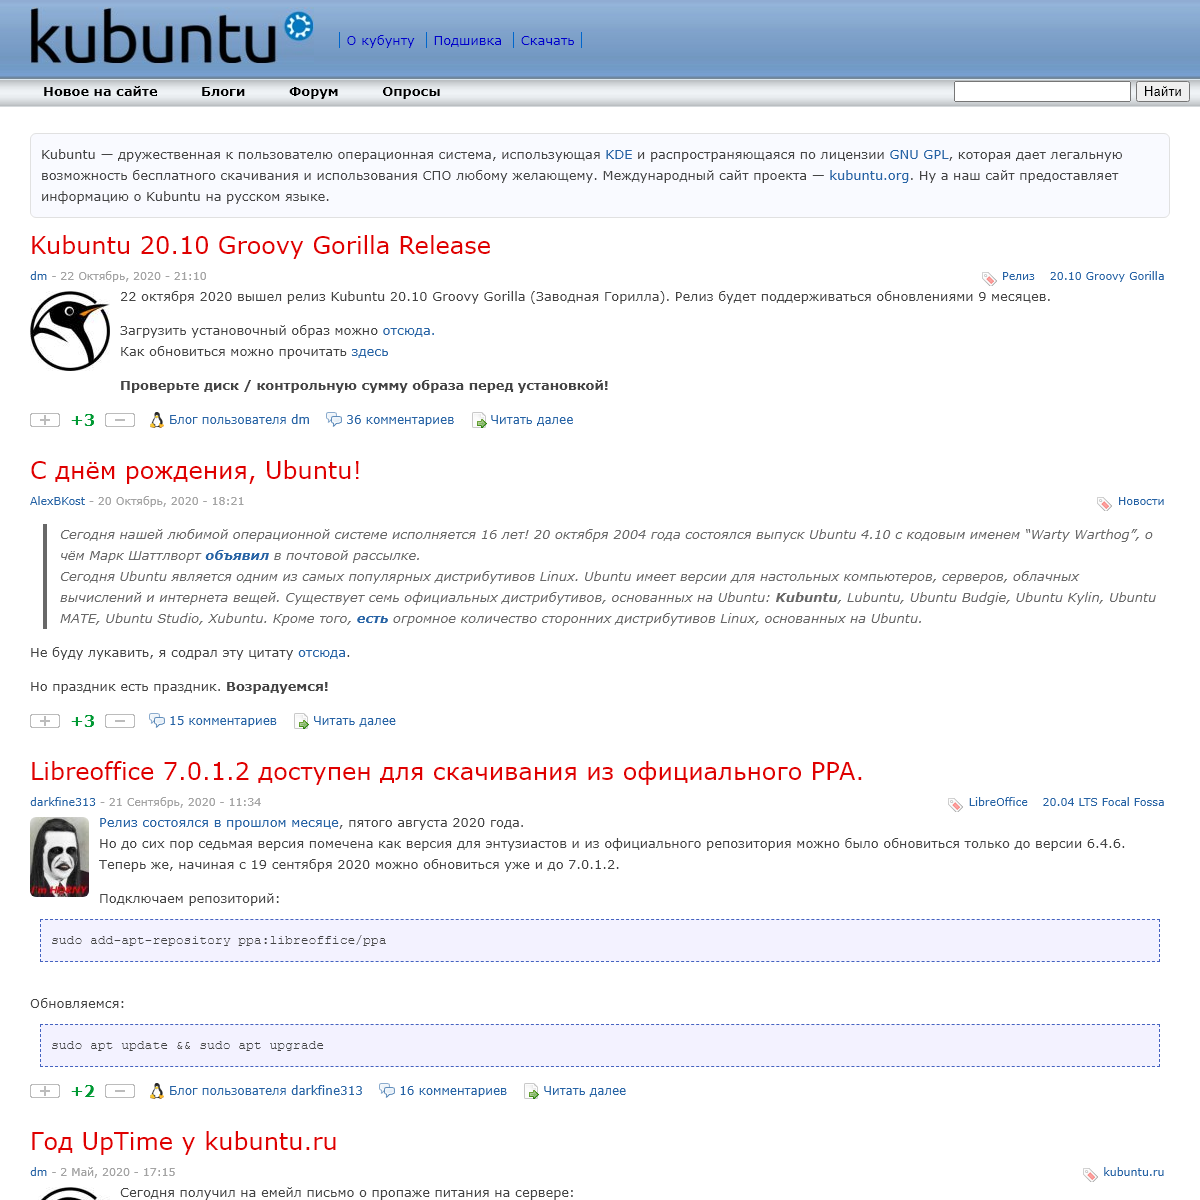 A complete backup of kubuntu.ru